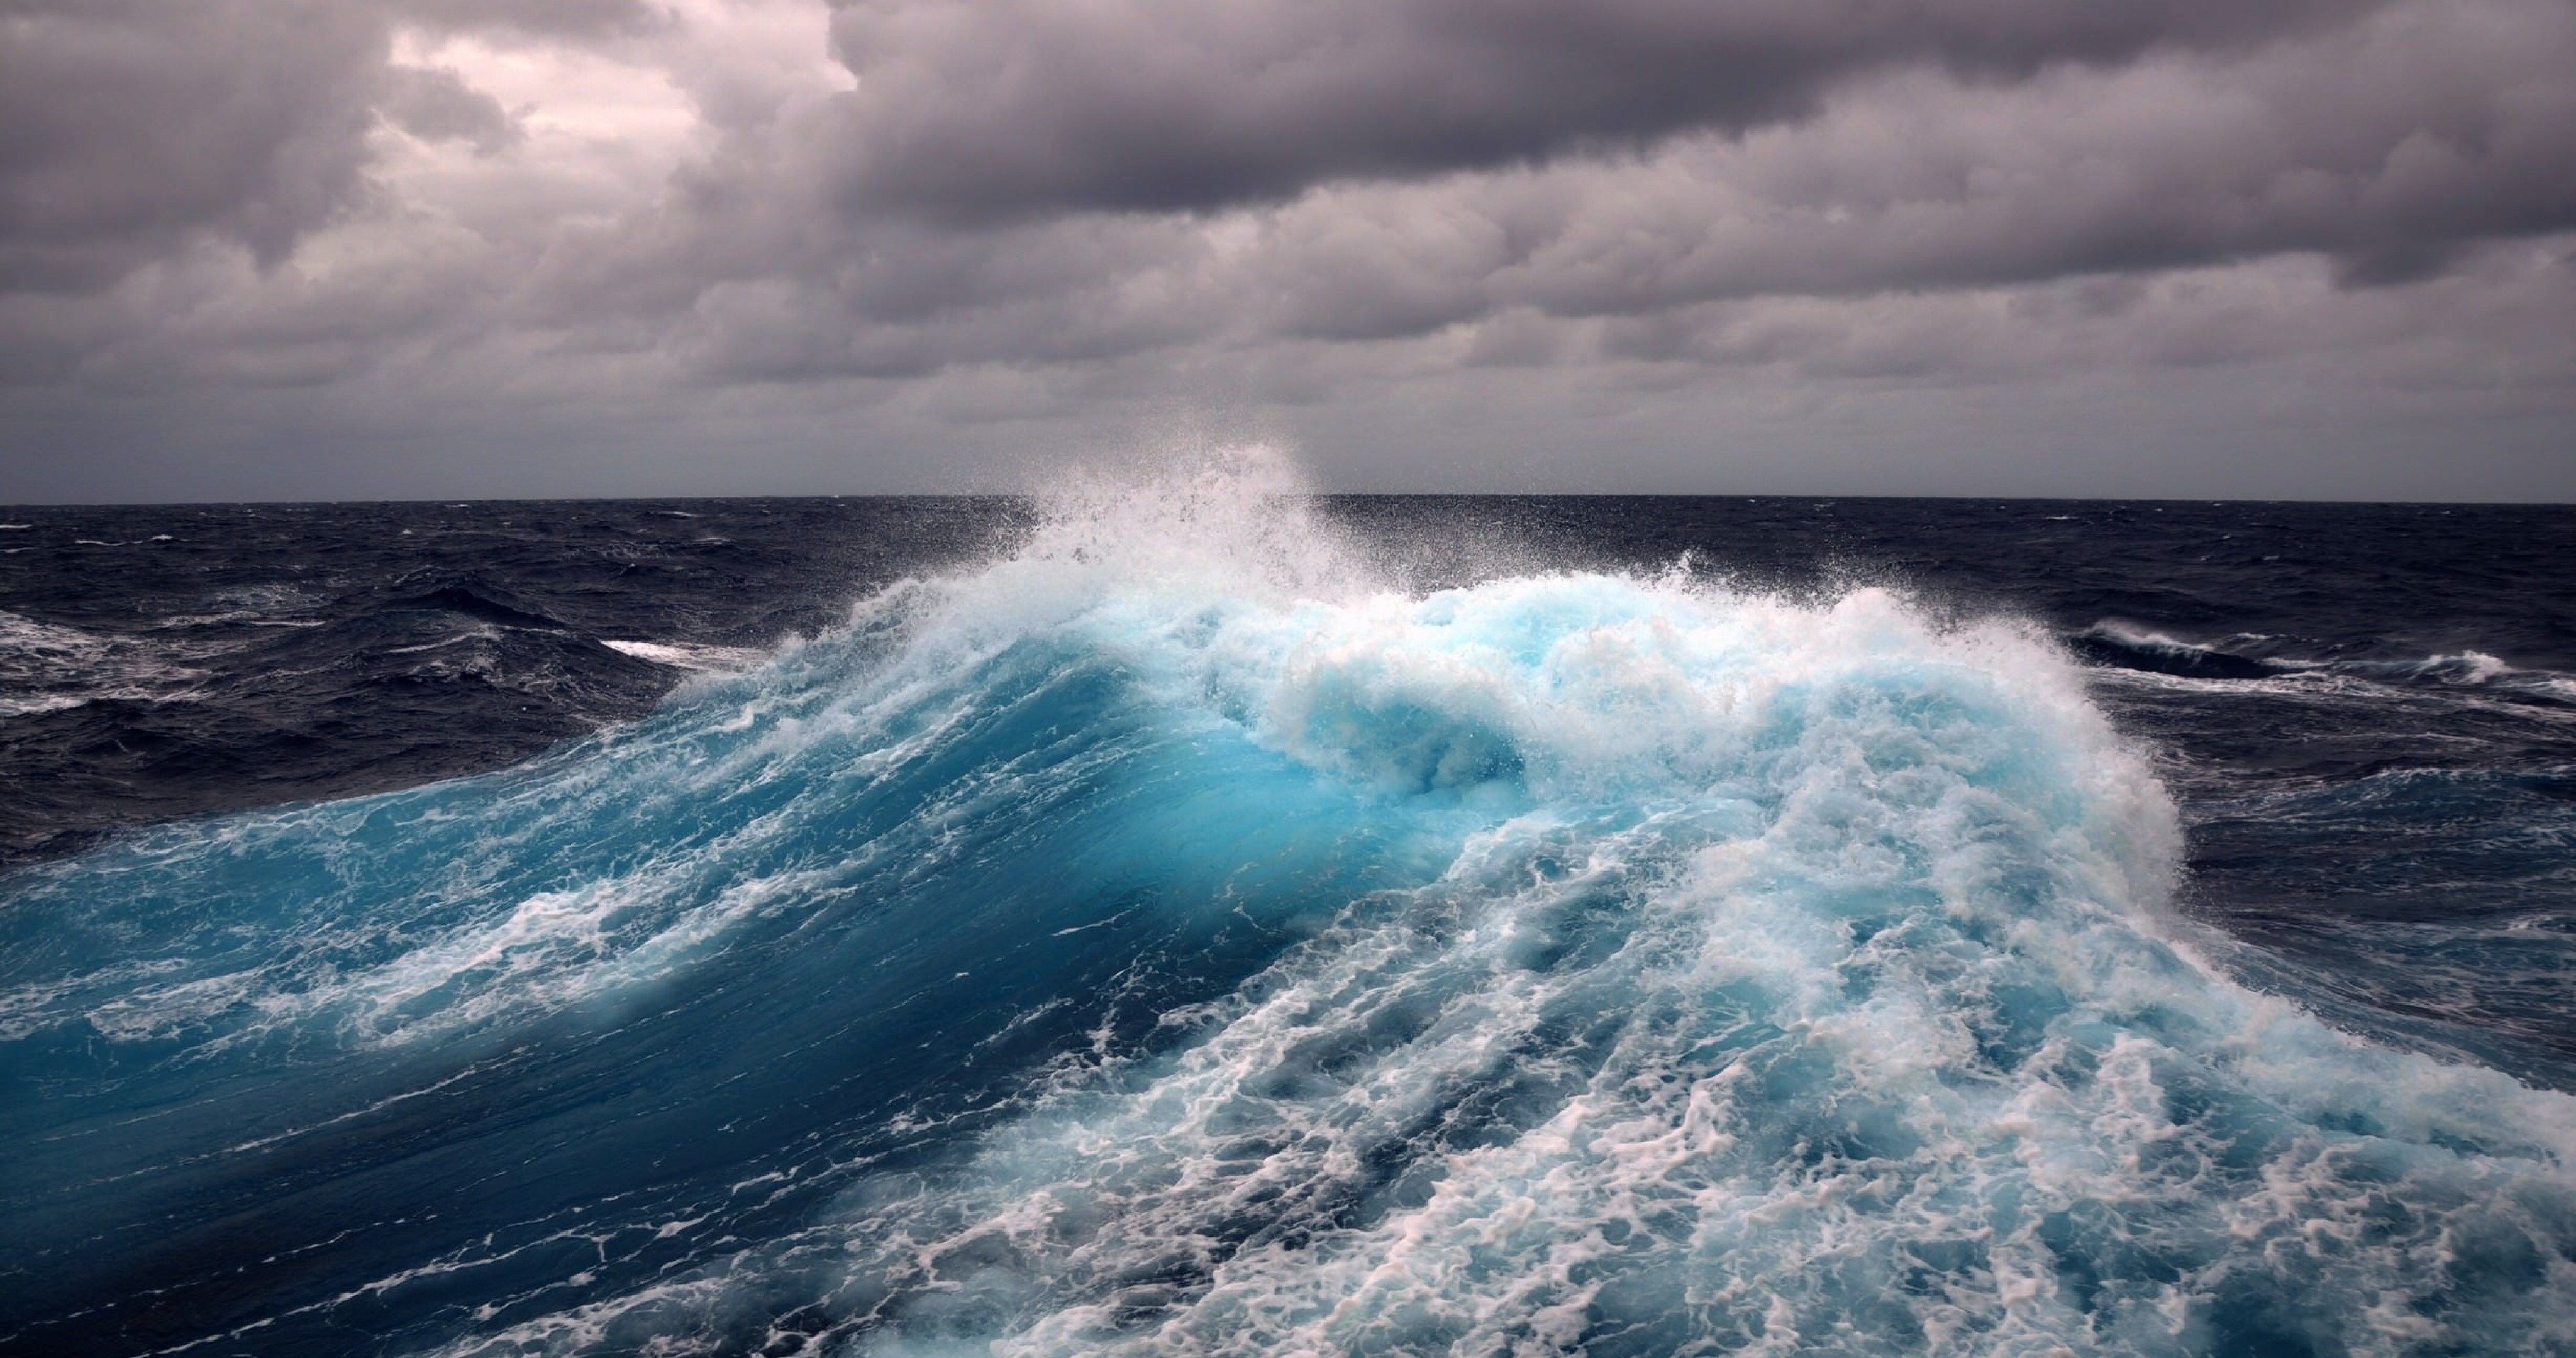 water wave 4k ultra HD wallpaper. Waves wallpaper, Sea waves, Ocean wallpaper